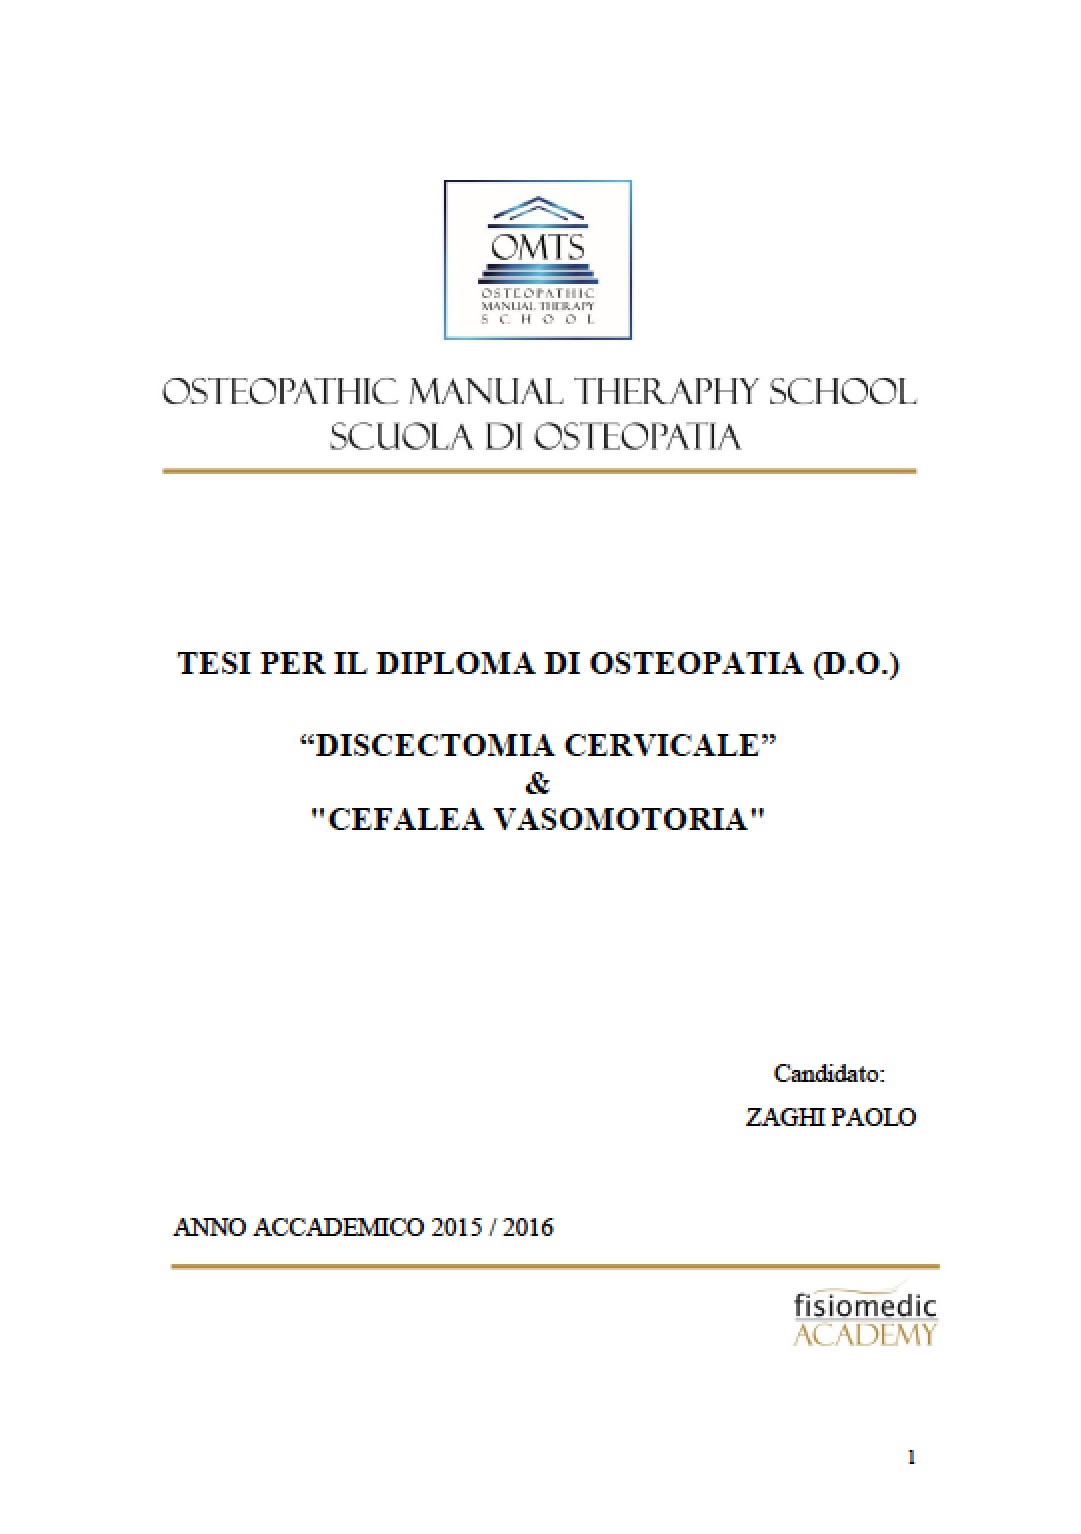 Paolo Zaghi Tesi Diploma Osteopatia 2016